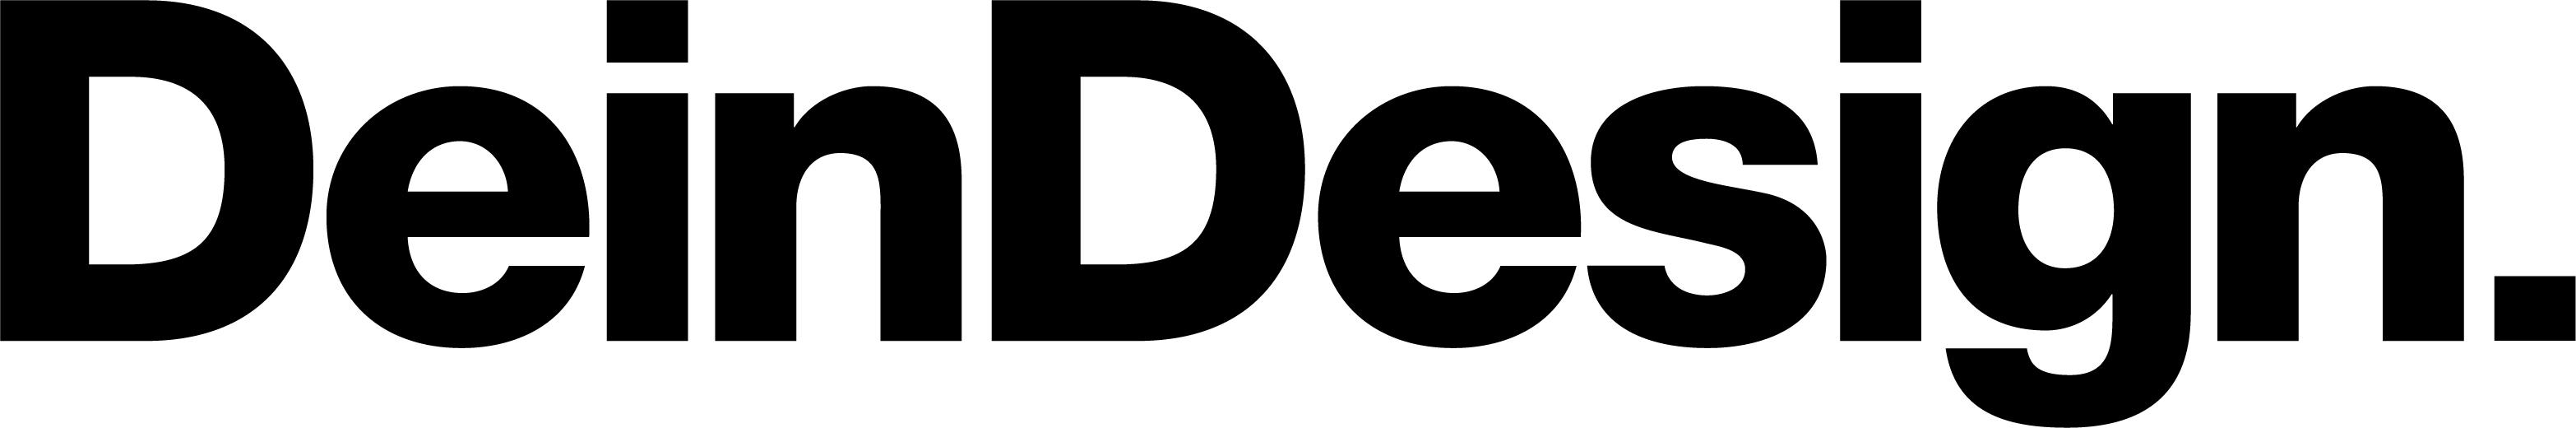 DeinDesign - logo 3132x525 - Referenzen - best it AG